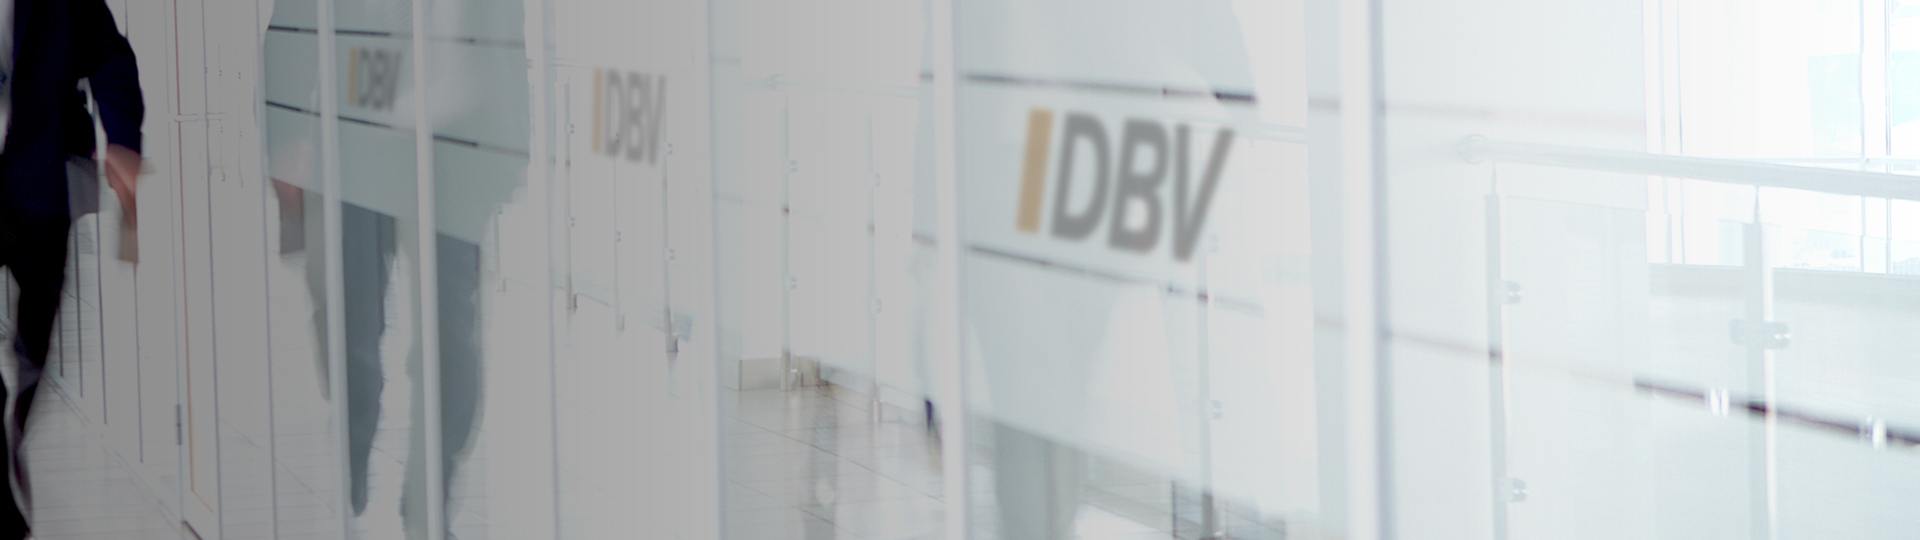 Dienstunfähigkeitsversicherung Köln | DBV Köln Schneppenheim GmbH 